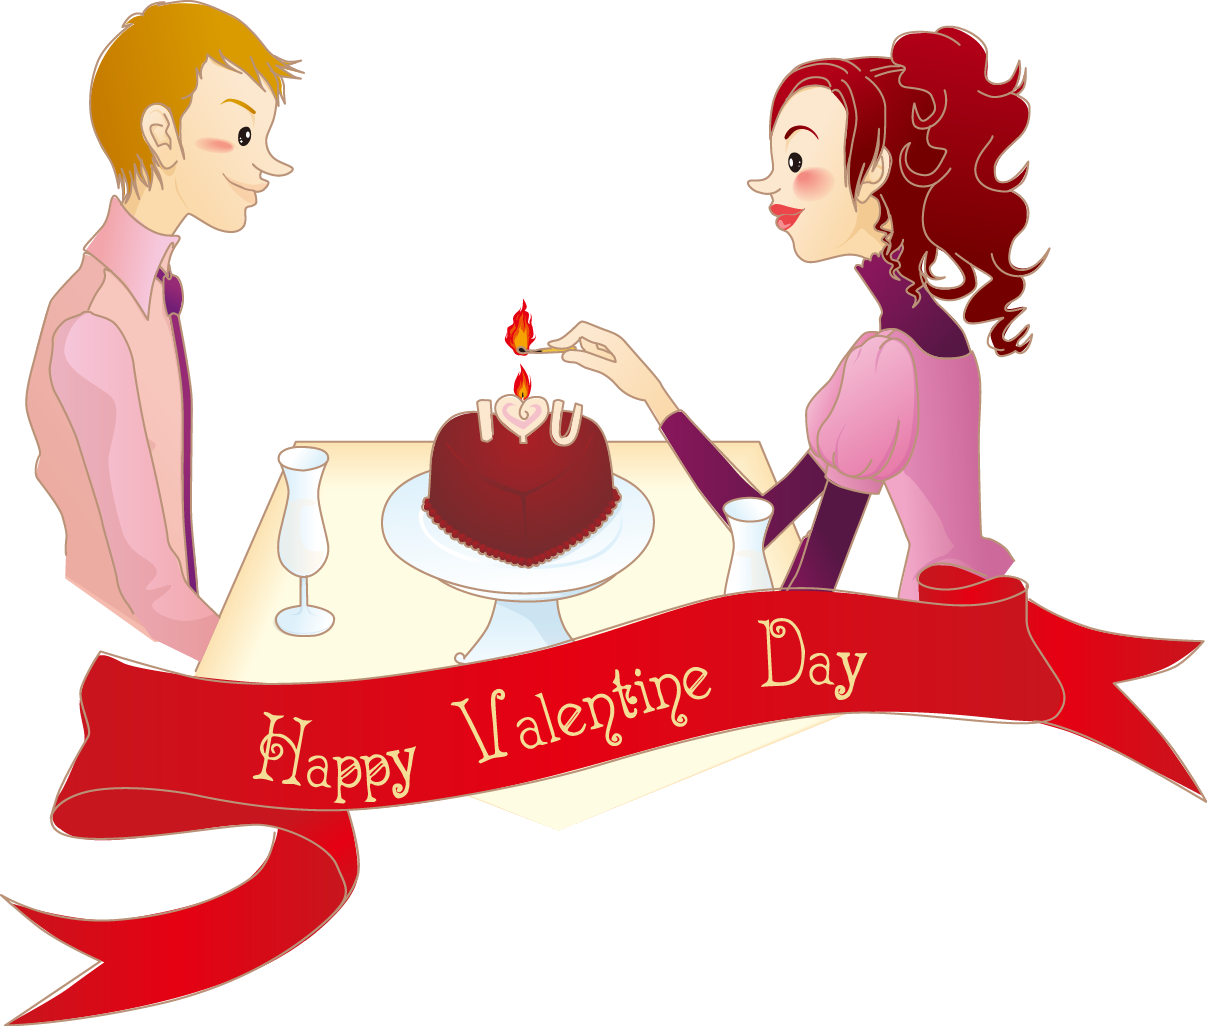 Download Valentines Day Romance Love Wallpaper Cartoon Couple - Desenhos  Românticas De Casais PNG Image with No Background 